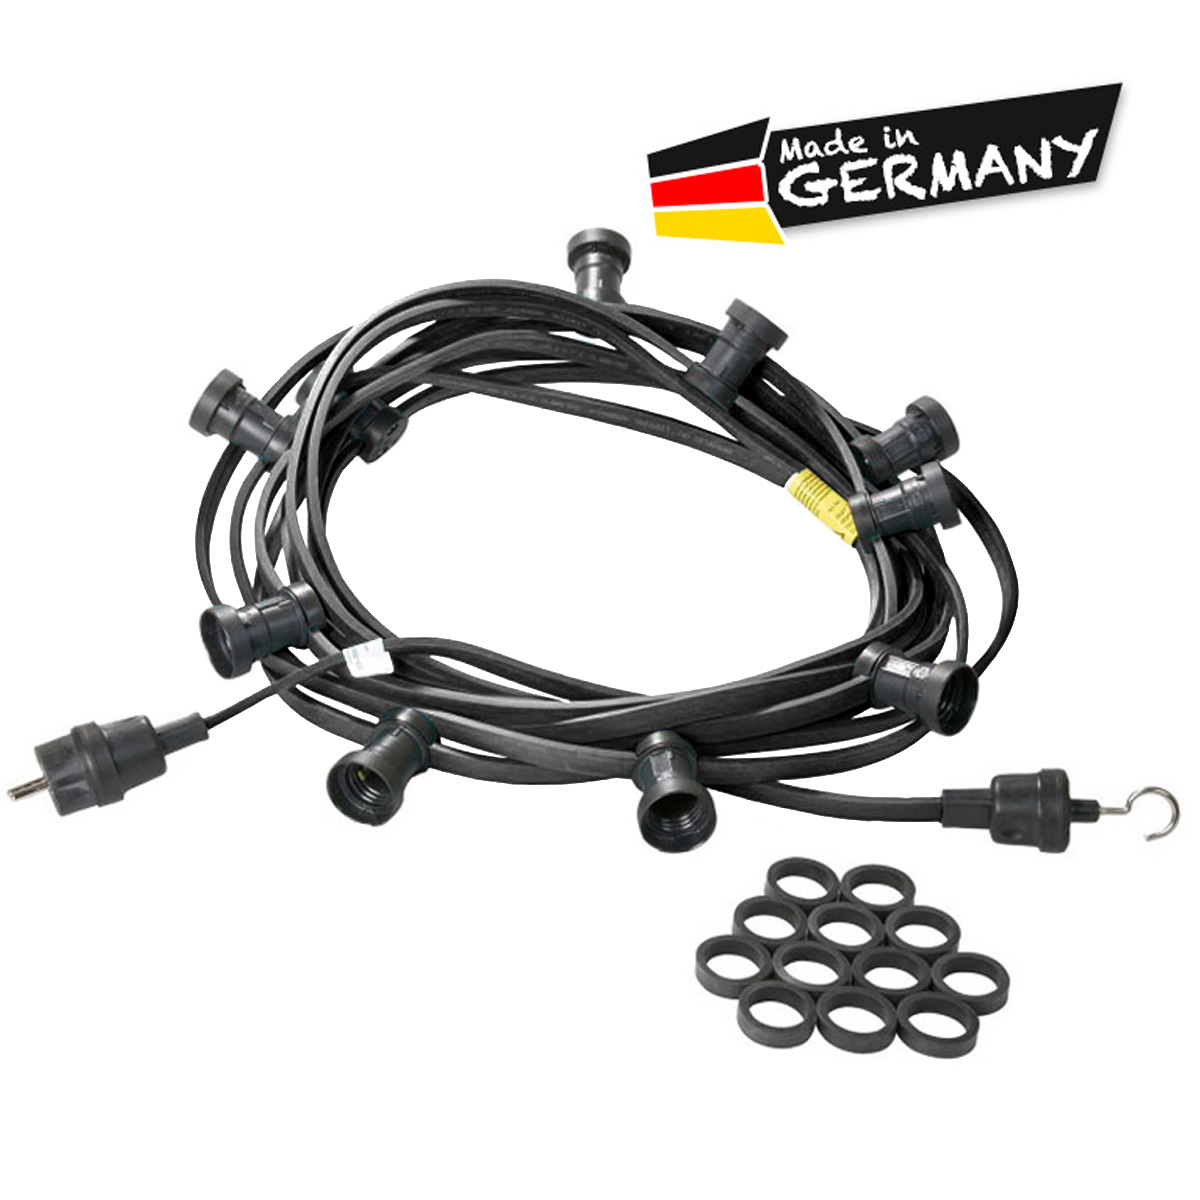 Illu-/Partylichterkette schwarz 10m | Außenlichterkette | Made in Germany | 20 x E27 Schraubfassung